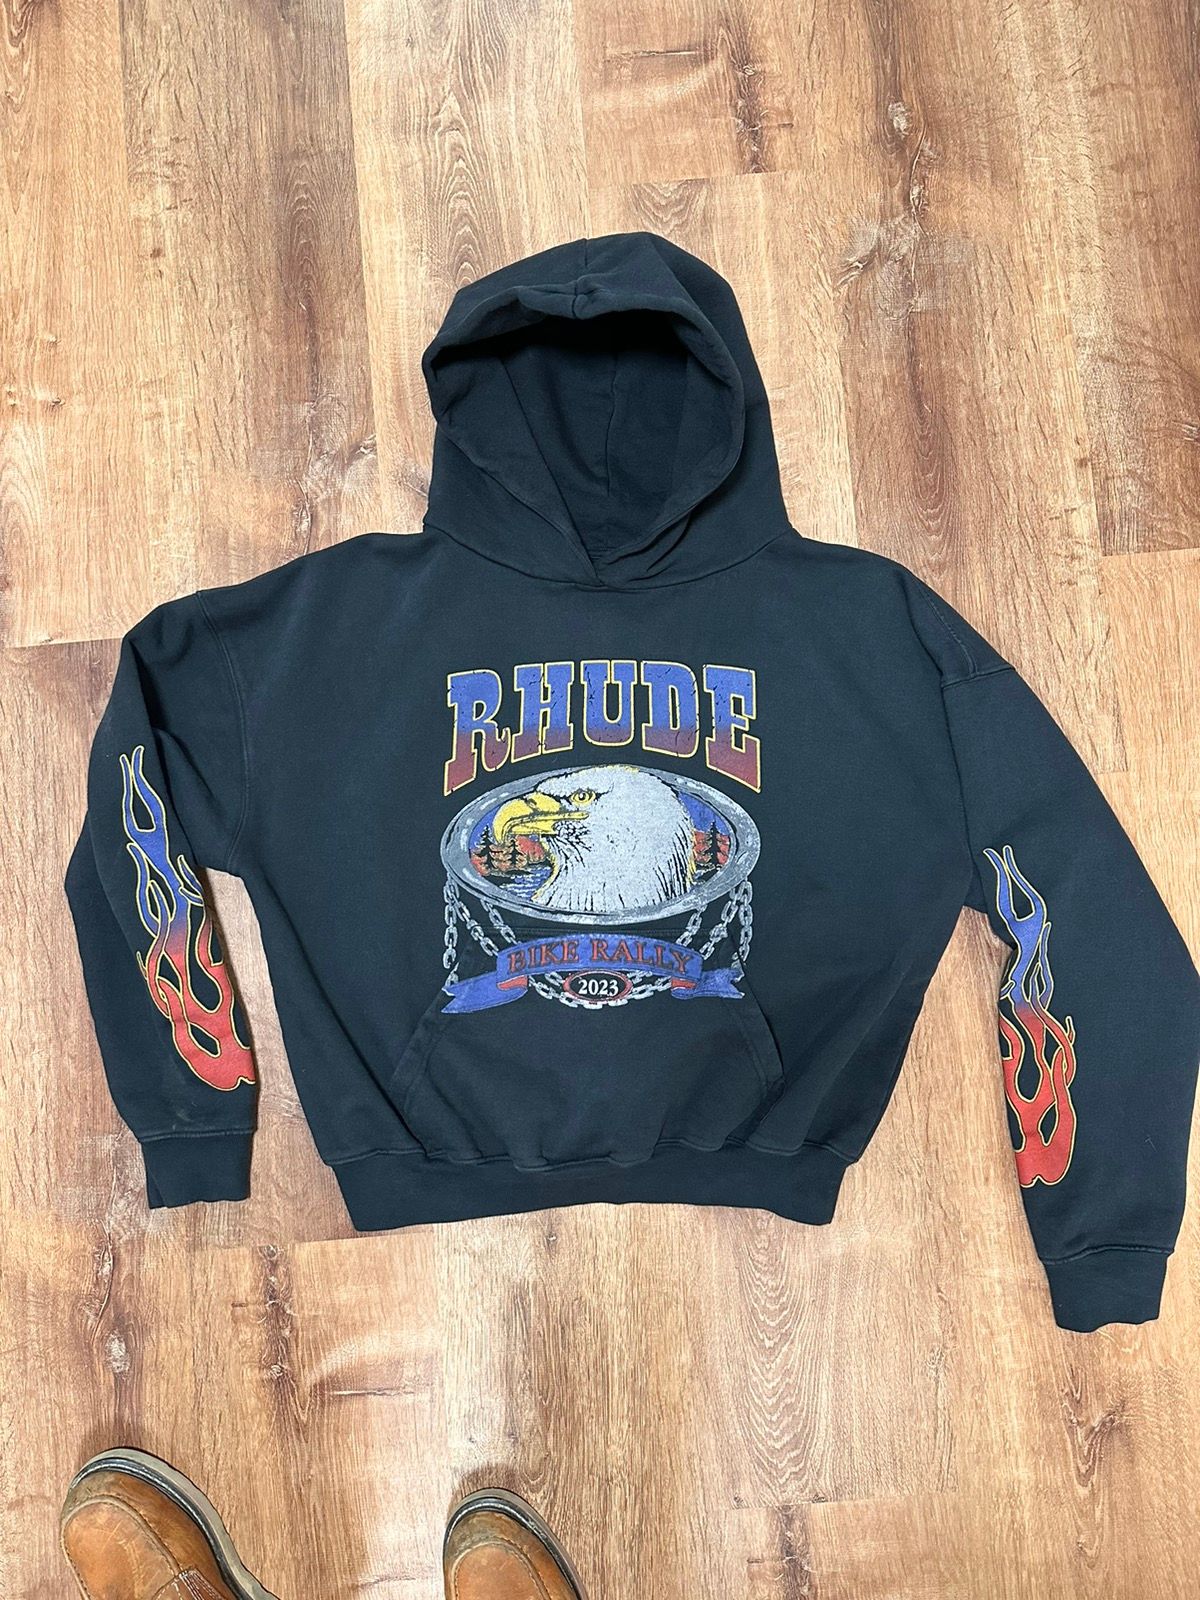 Pre-owned Rhude Hoodie | Screaming Eagle Hoodie In Black